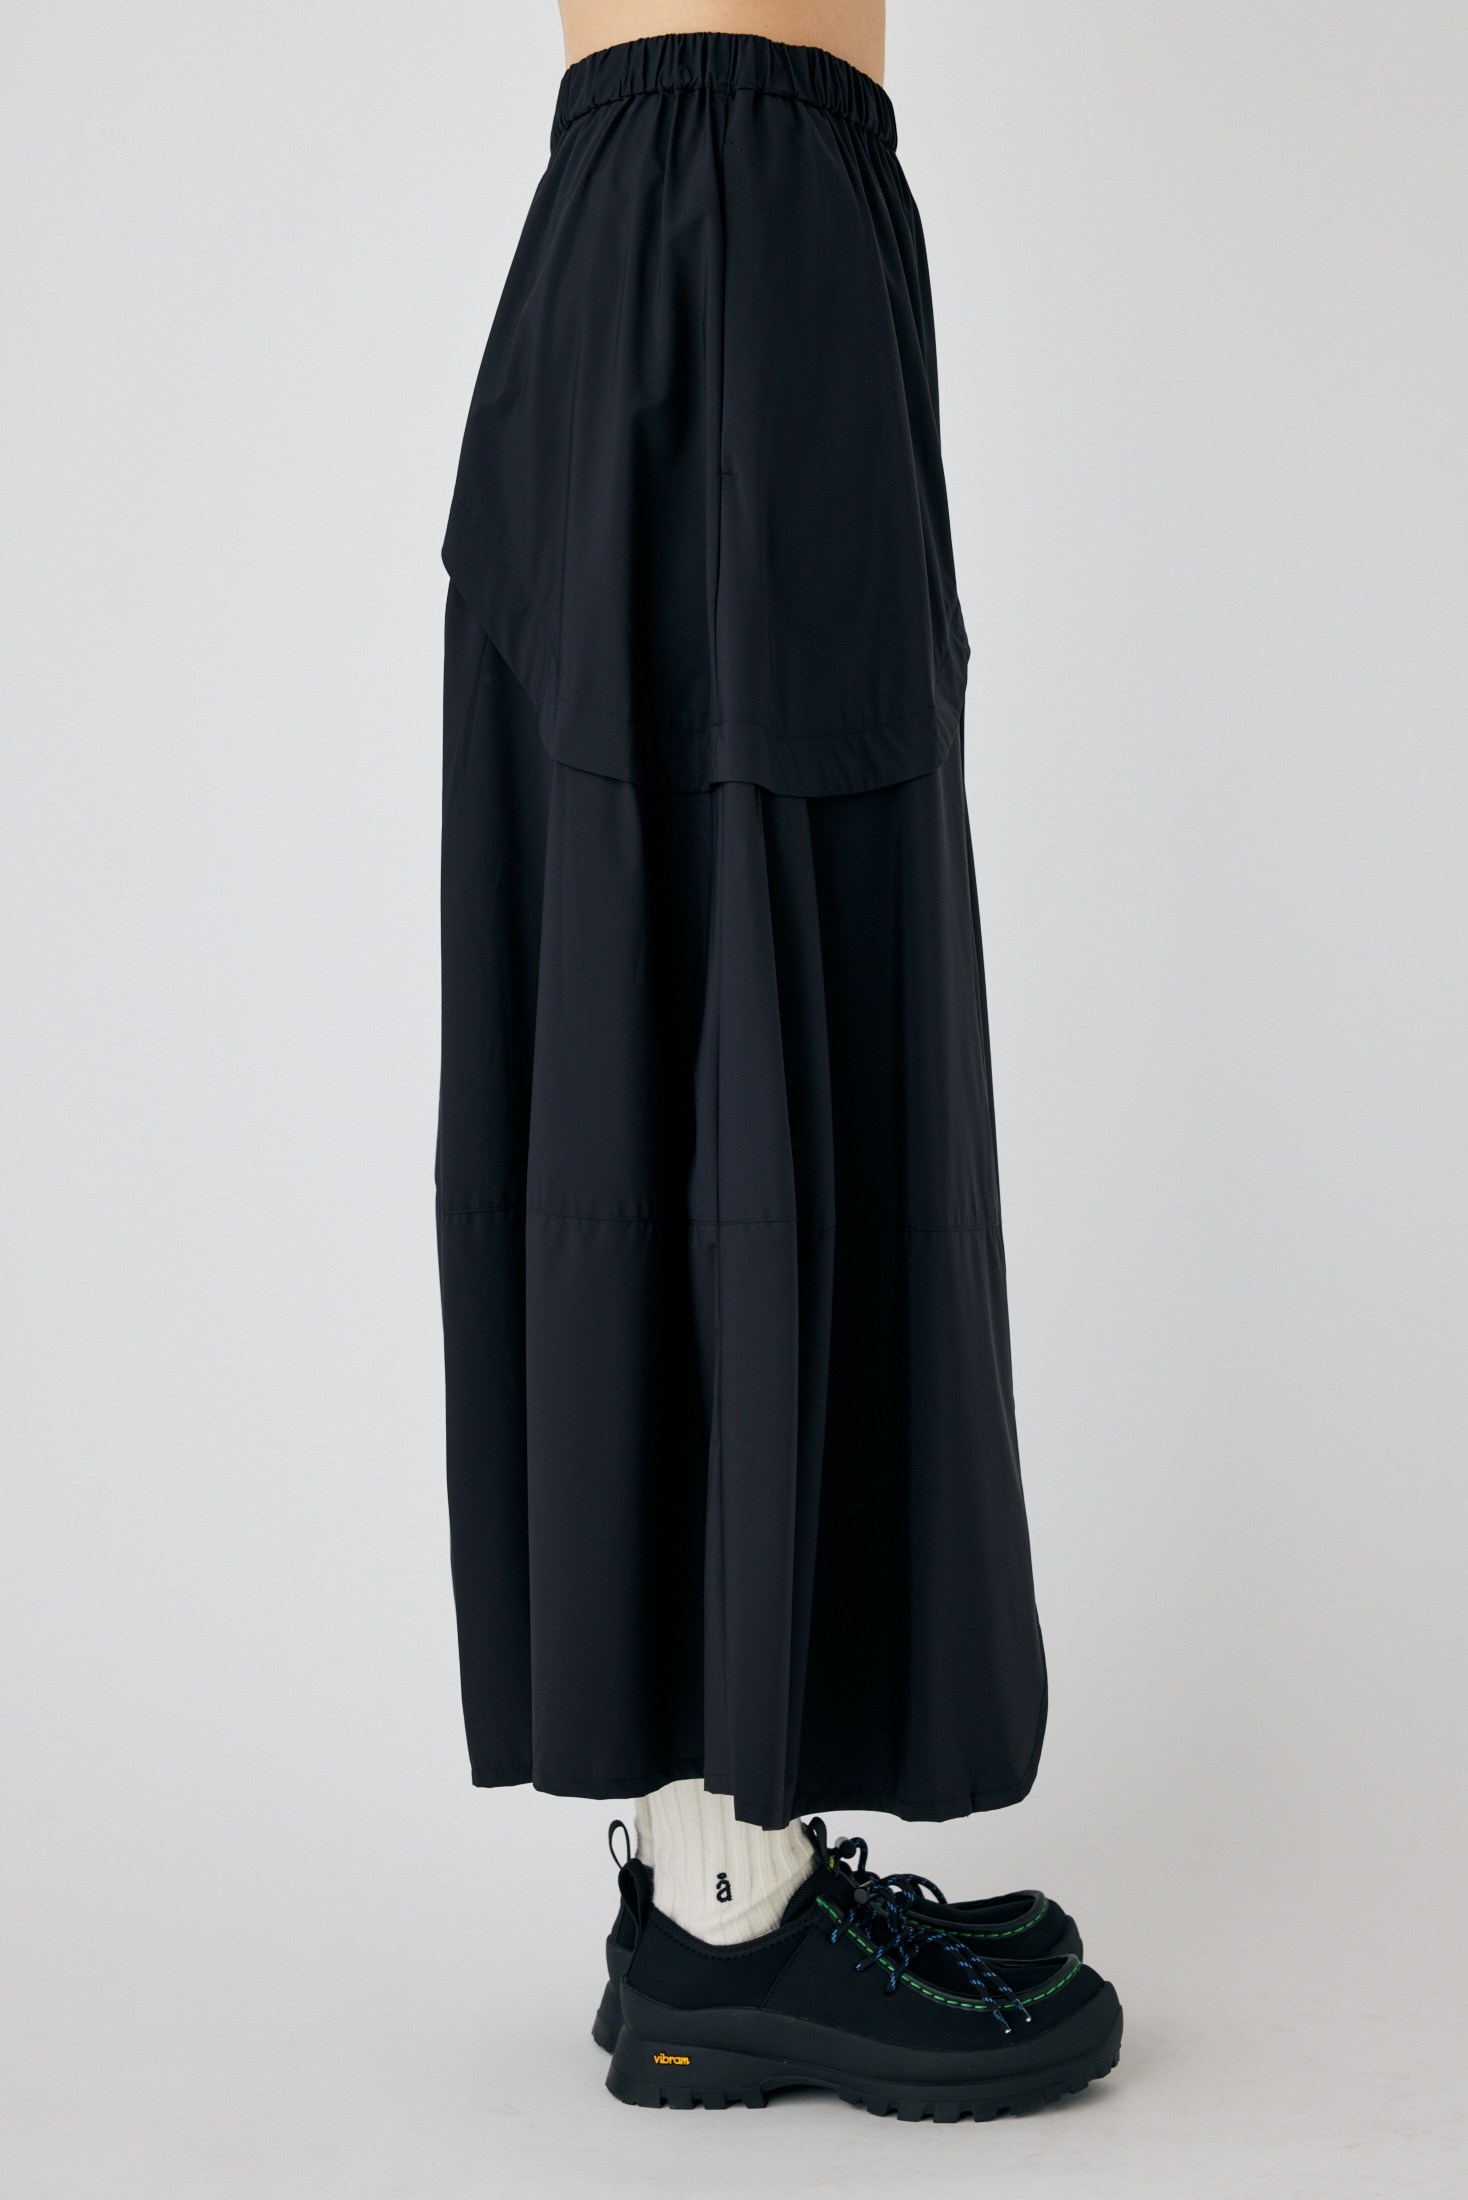 round drape skirt